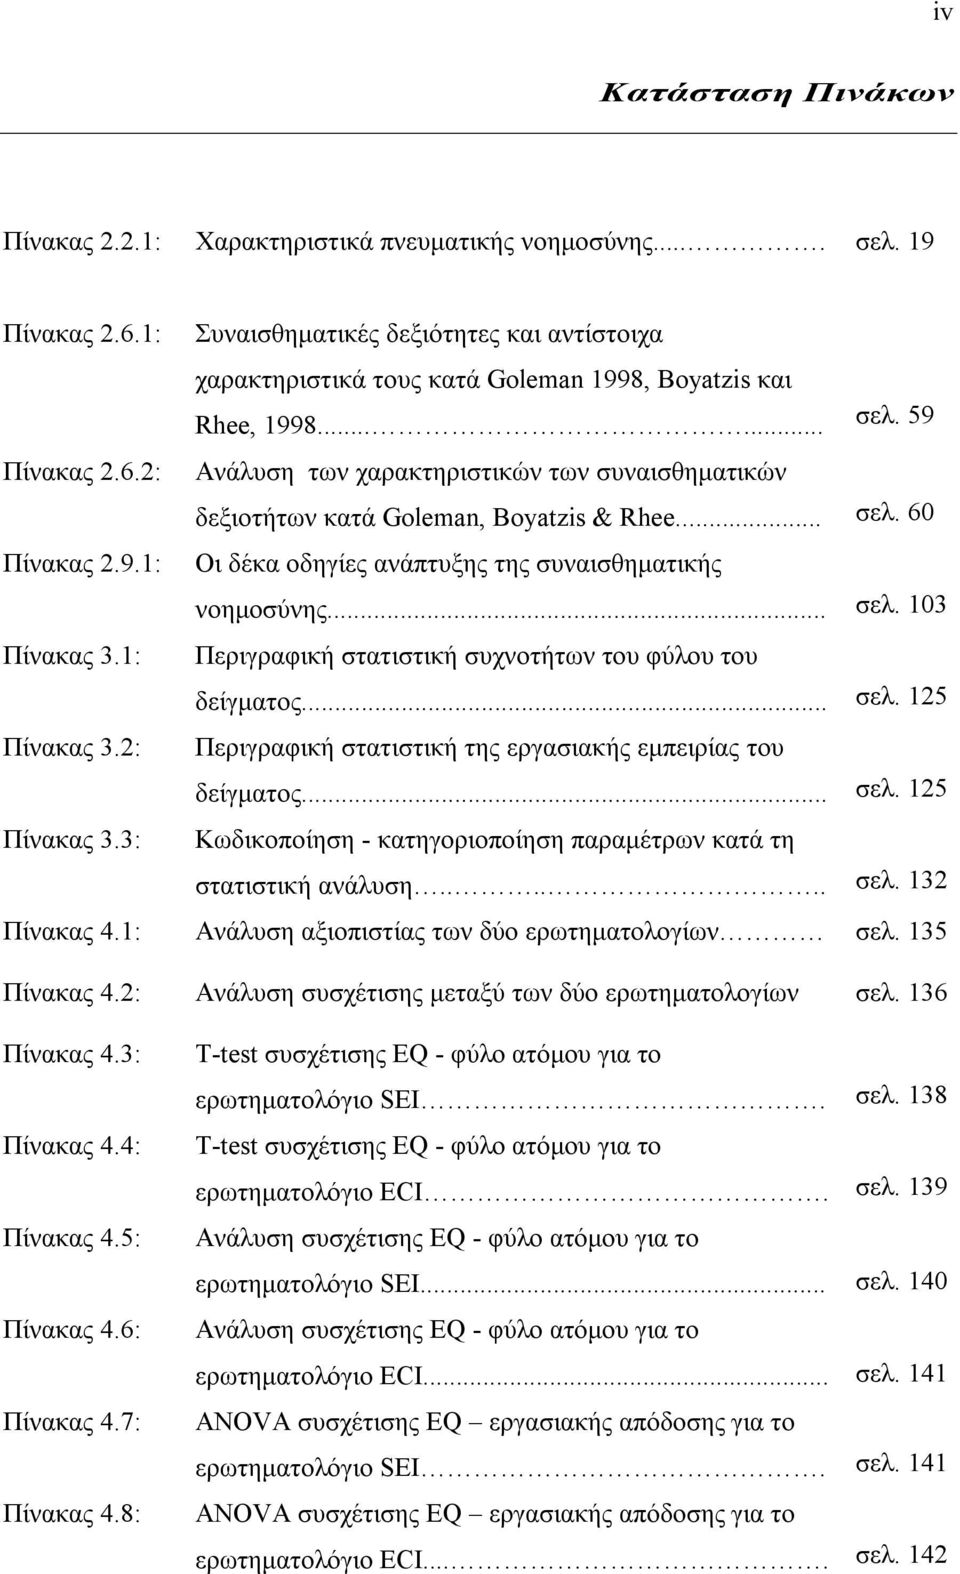 59 Ανάλυση των χαρακτηριστικών των συναισθηματικών δεξιοτήτων κατά Goleman, Boyatzis & Rhee... σελ. 60 Οι δέκα οδηγίες ανάπτυξης της συναισθηματικής νοημοσύνης... σελ. 103 Περιγραφική στατιστική συχνοτήτων του φύλου του δείγματος.